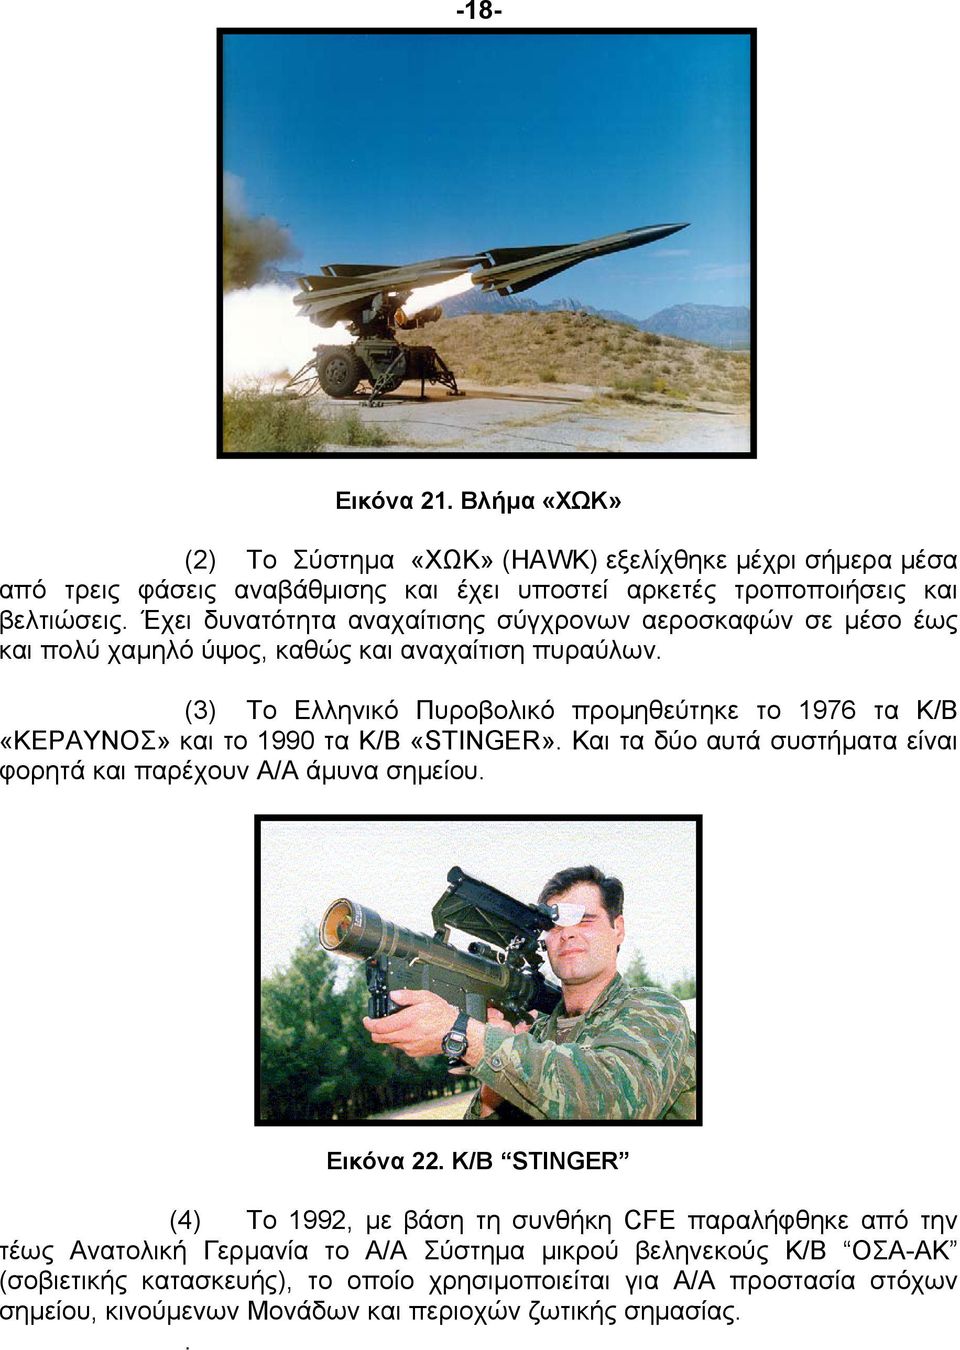 (3) Το Ελληνικό Πυροβολικό προμηθεύτηκε το 1976 τα Κ/Β «ΚΕΡΑΥΝΟΣ» και το 1990 τα Κ/Β «STINGER». Και τα δύο αυτά συστήματα είναι φορητά και παρέχουν Α/Α άμυνα σημείου. Εικόνα 22.